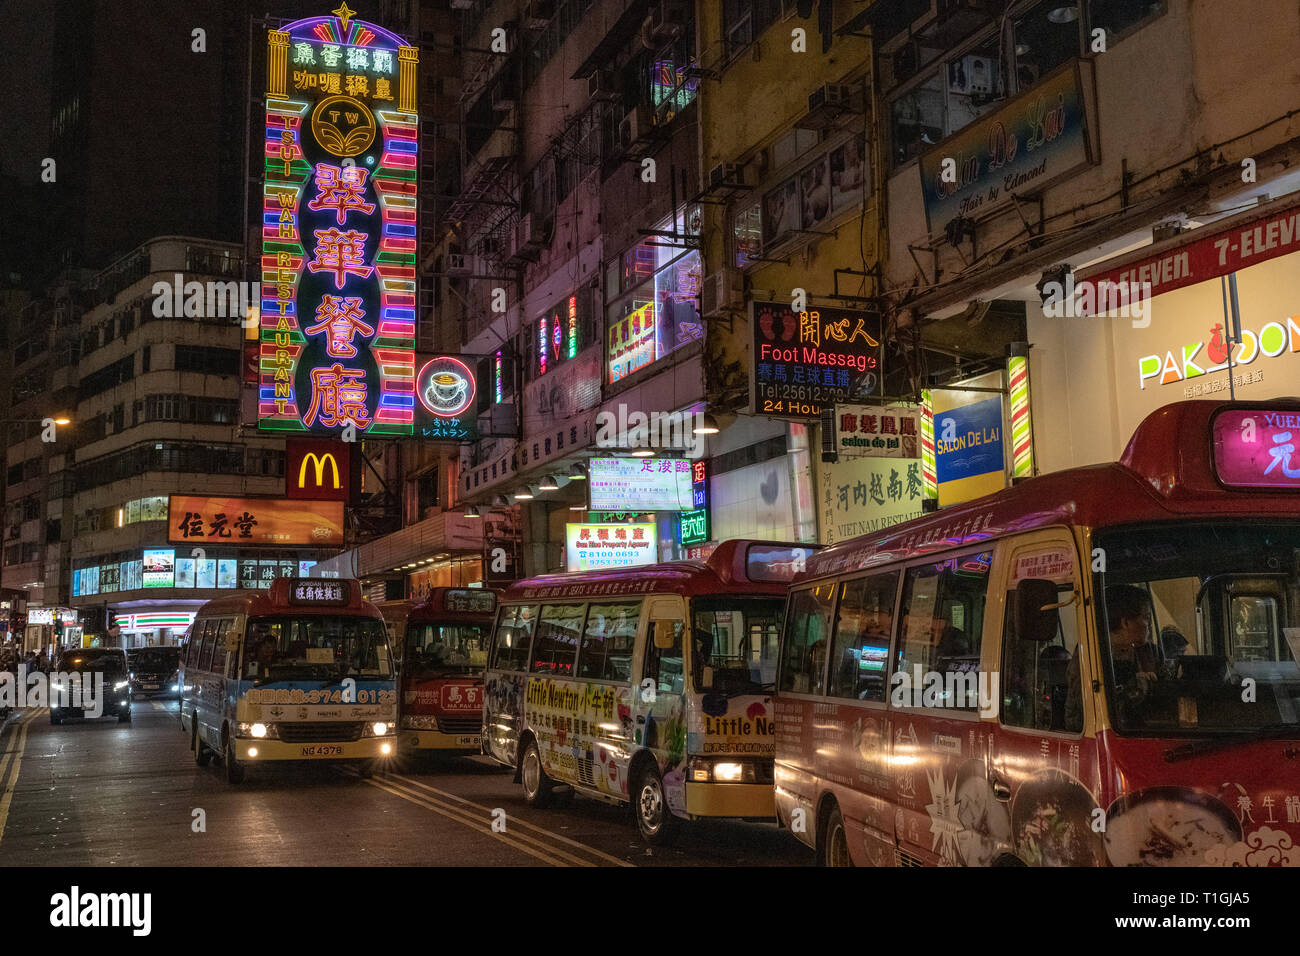 Buses and Street Signs at Night, Hong Kong Stock Photo